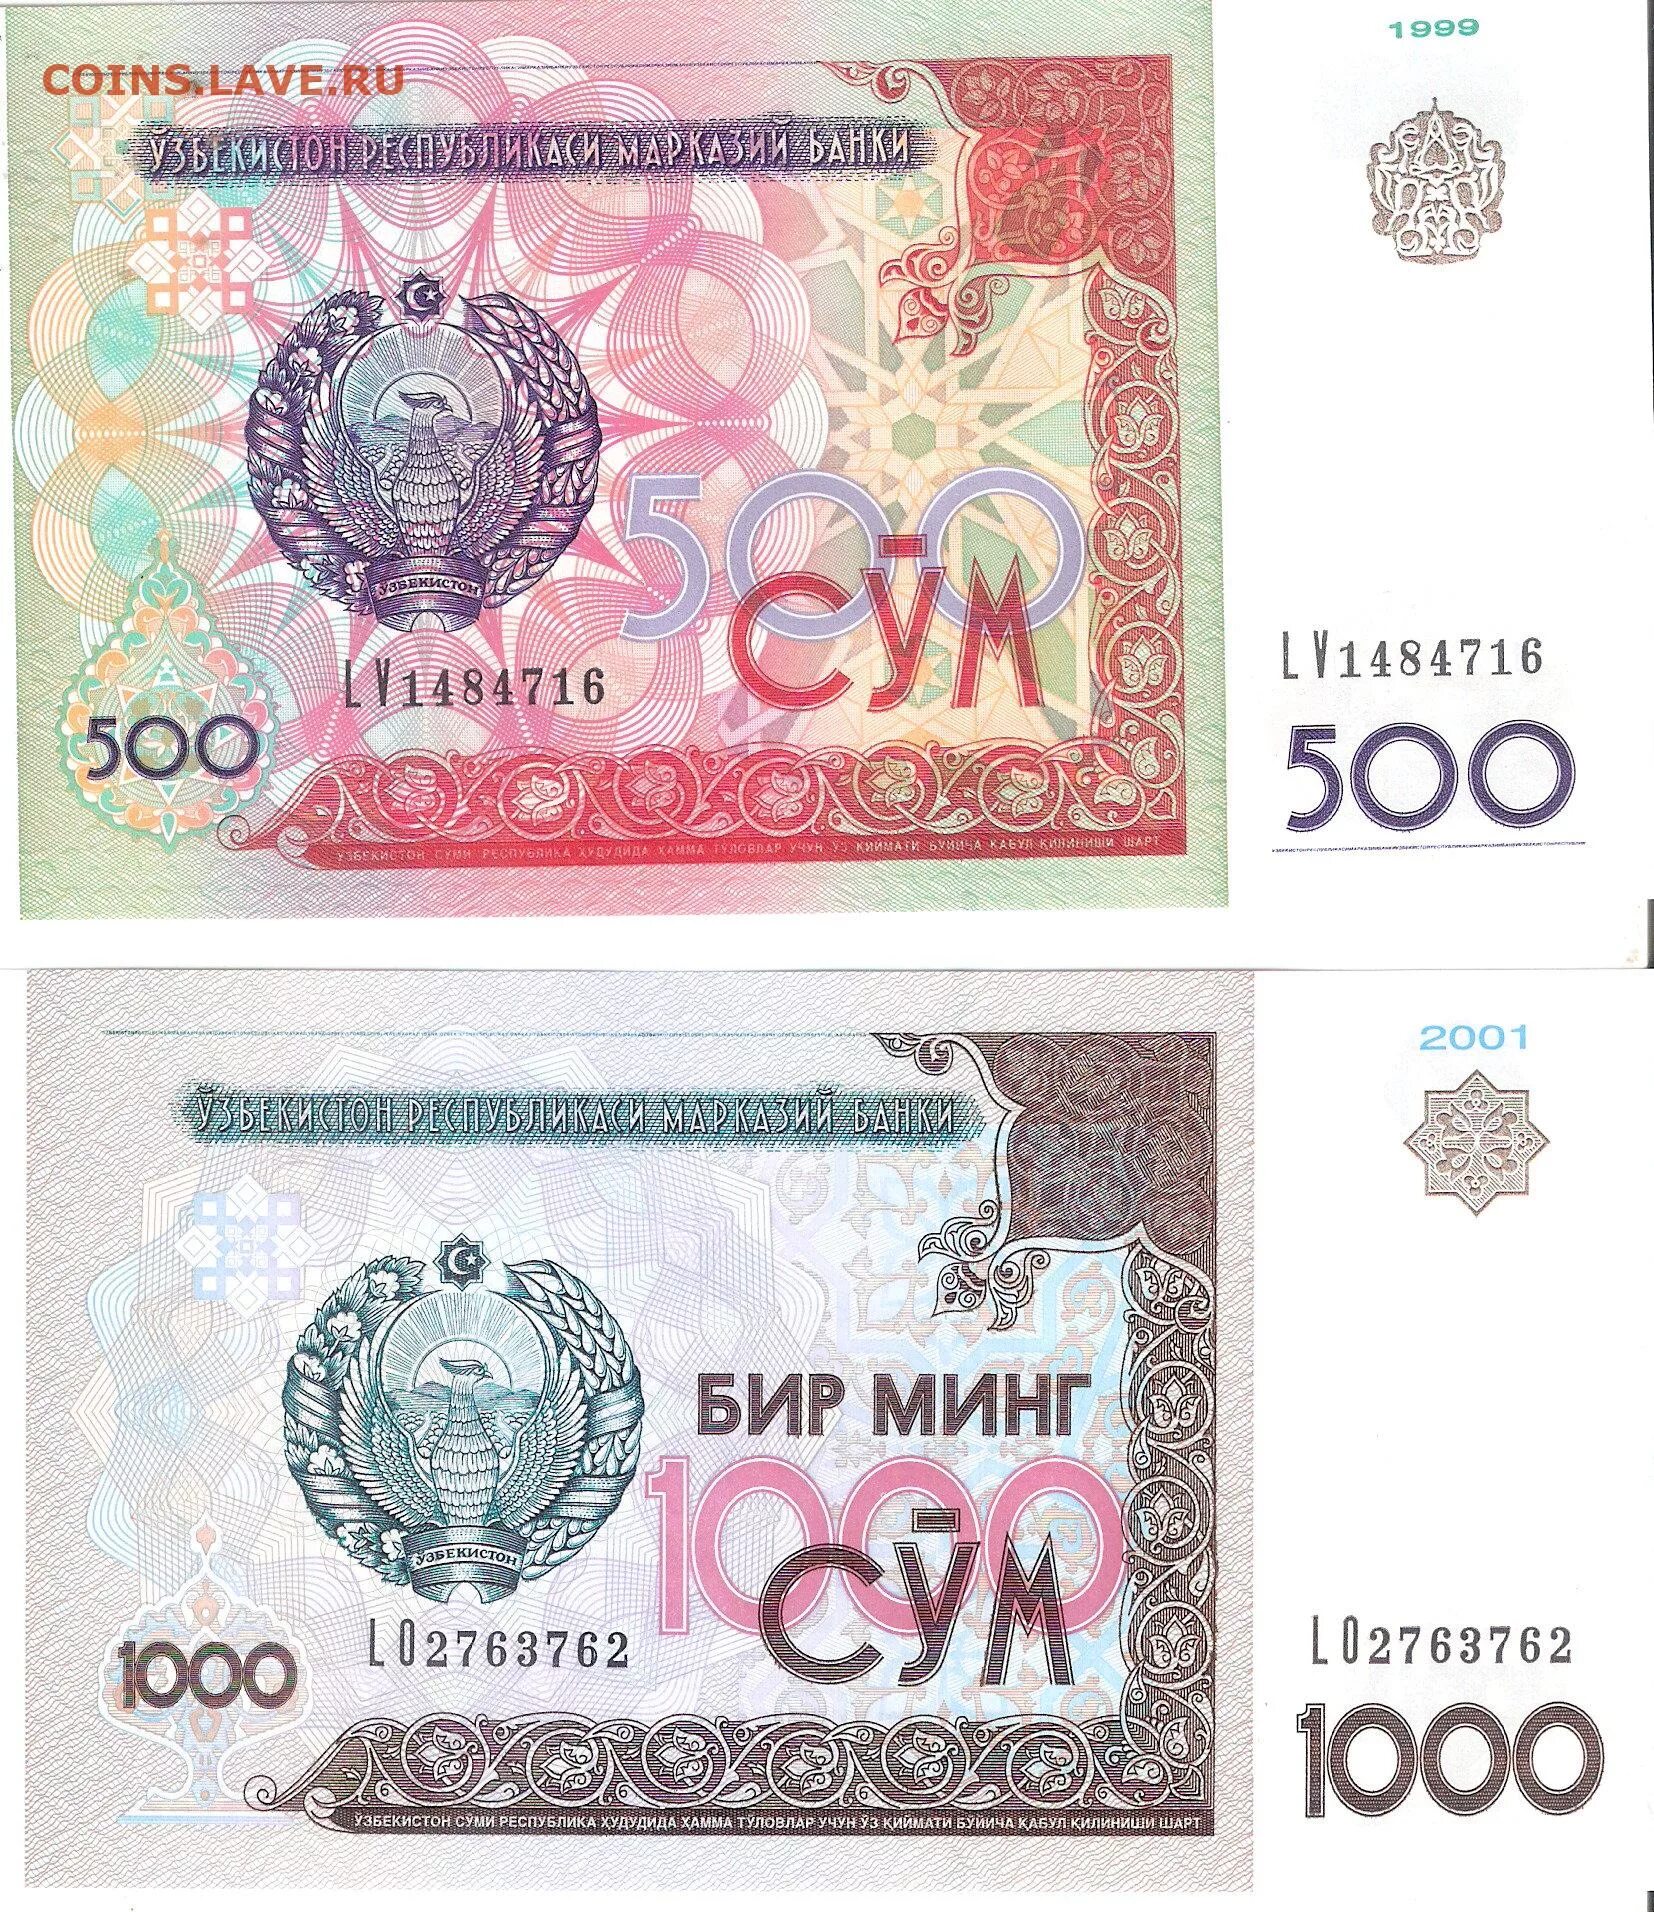 Сайт сум. 500 Сўм. Узбекистан 500 сом 1999. Банкнота 500 сум Узбекистан. Узбекистан 1000 сум 2001.